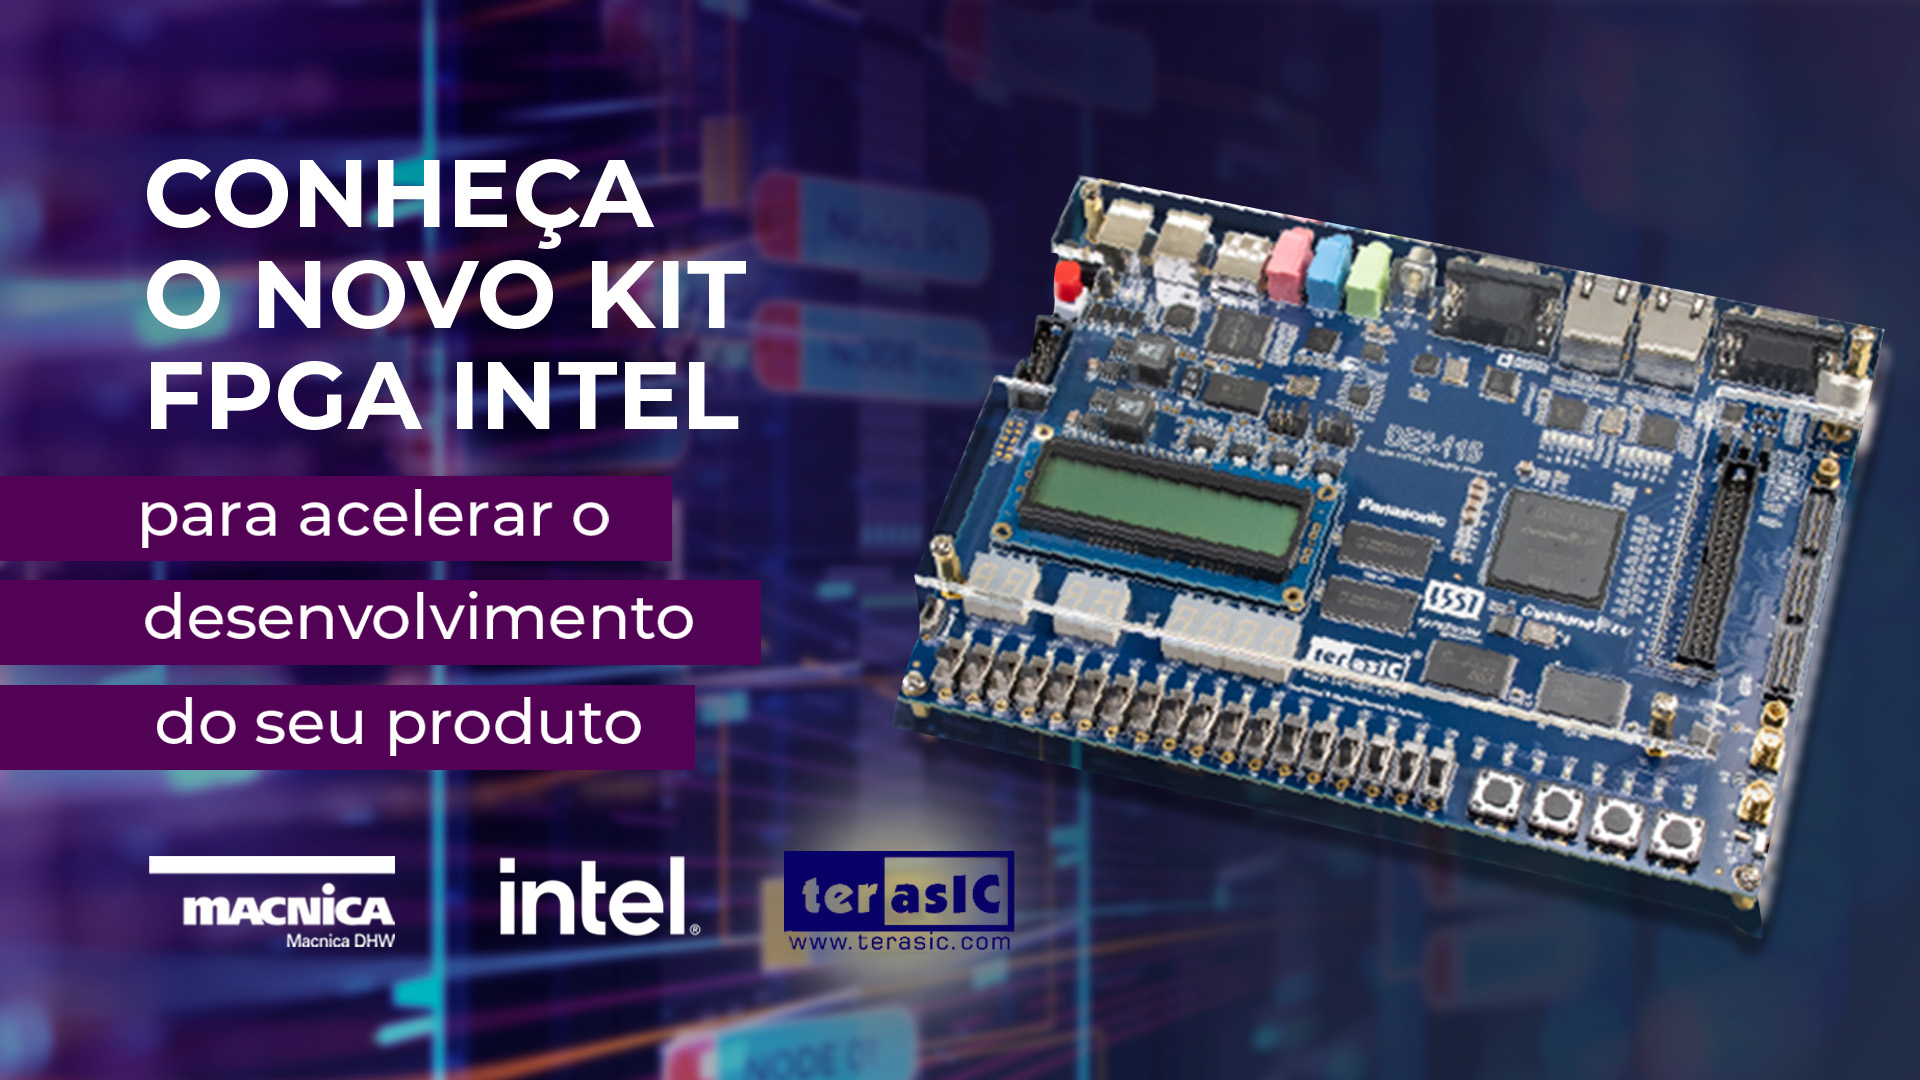 Conheça o novo kit FPGA Intel para acelerar o desenvolvimento do seu produto